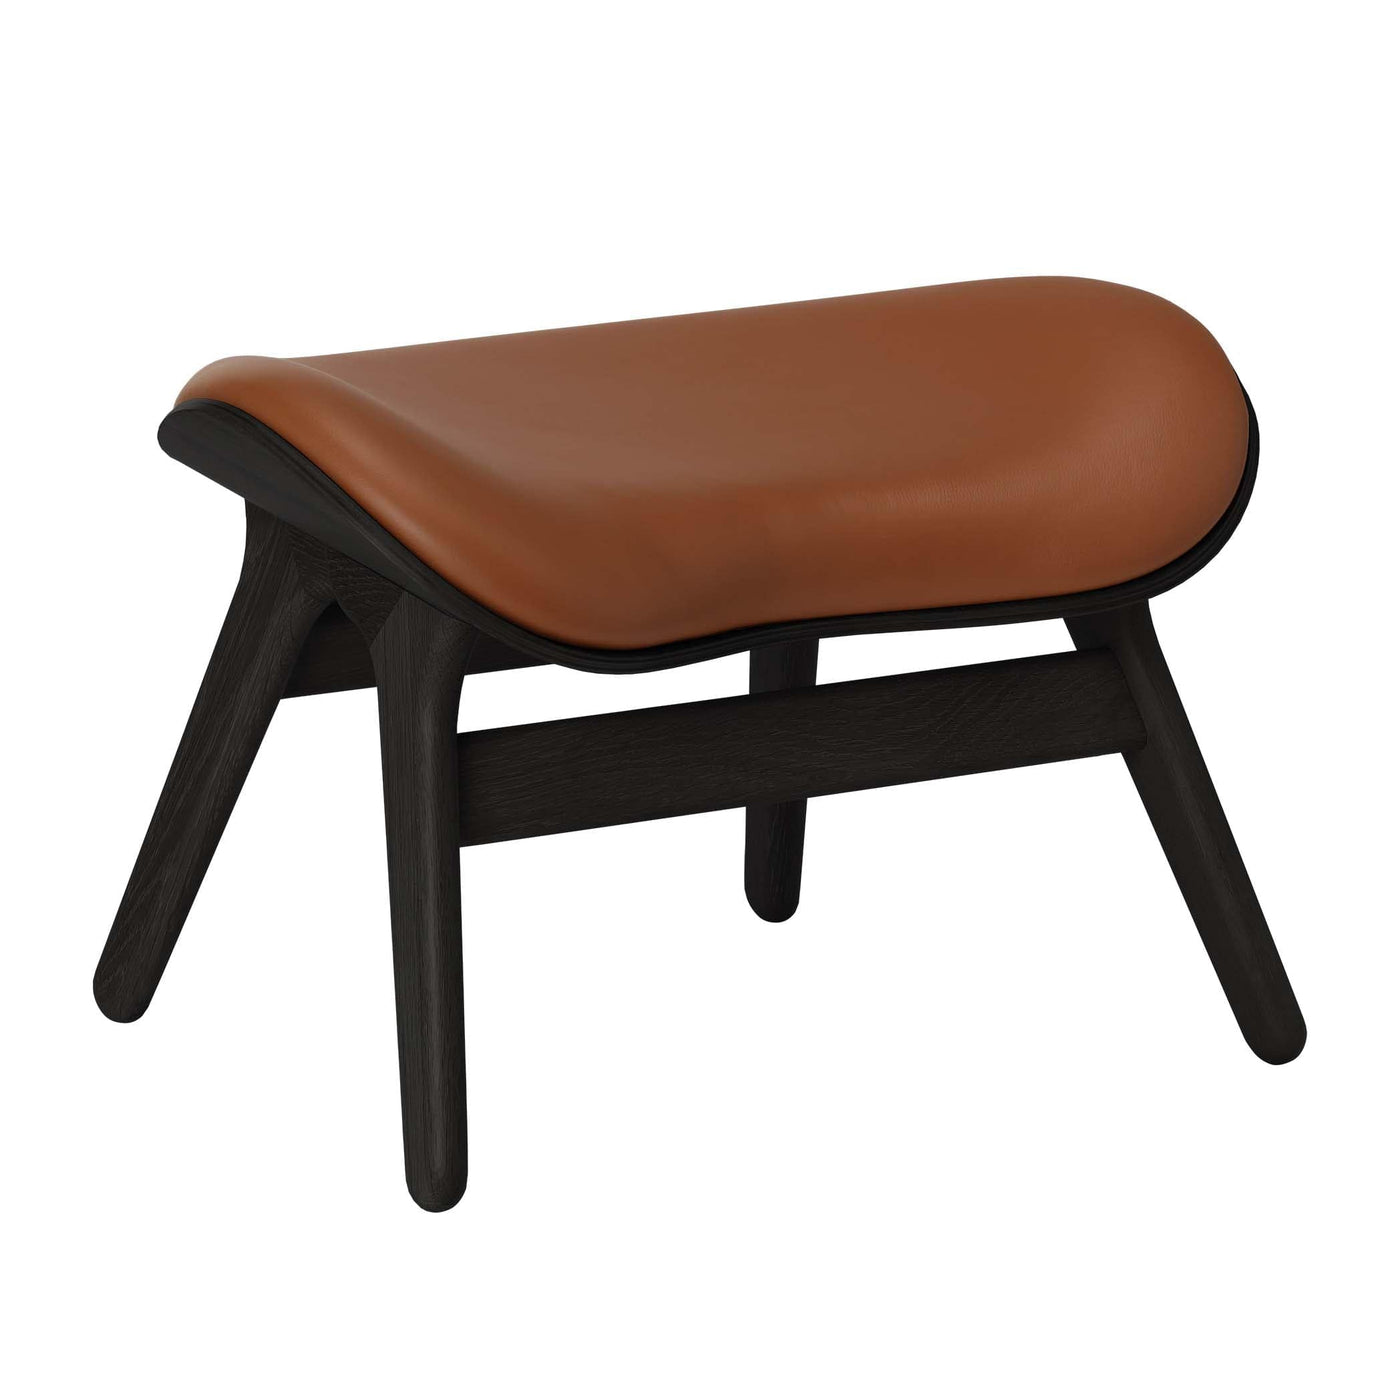 Umage A Conversation Piece, ottoman pour accompagner le fauteuil, en bois et polyester, cuir cognac, chêne noir